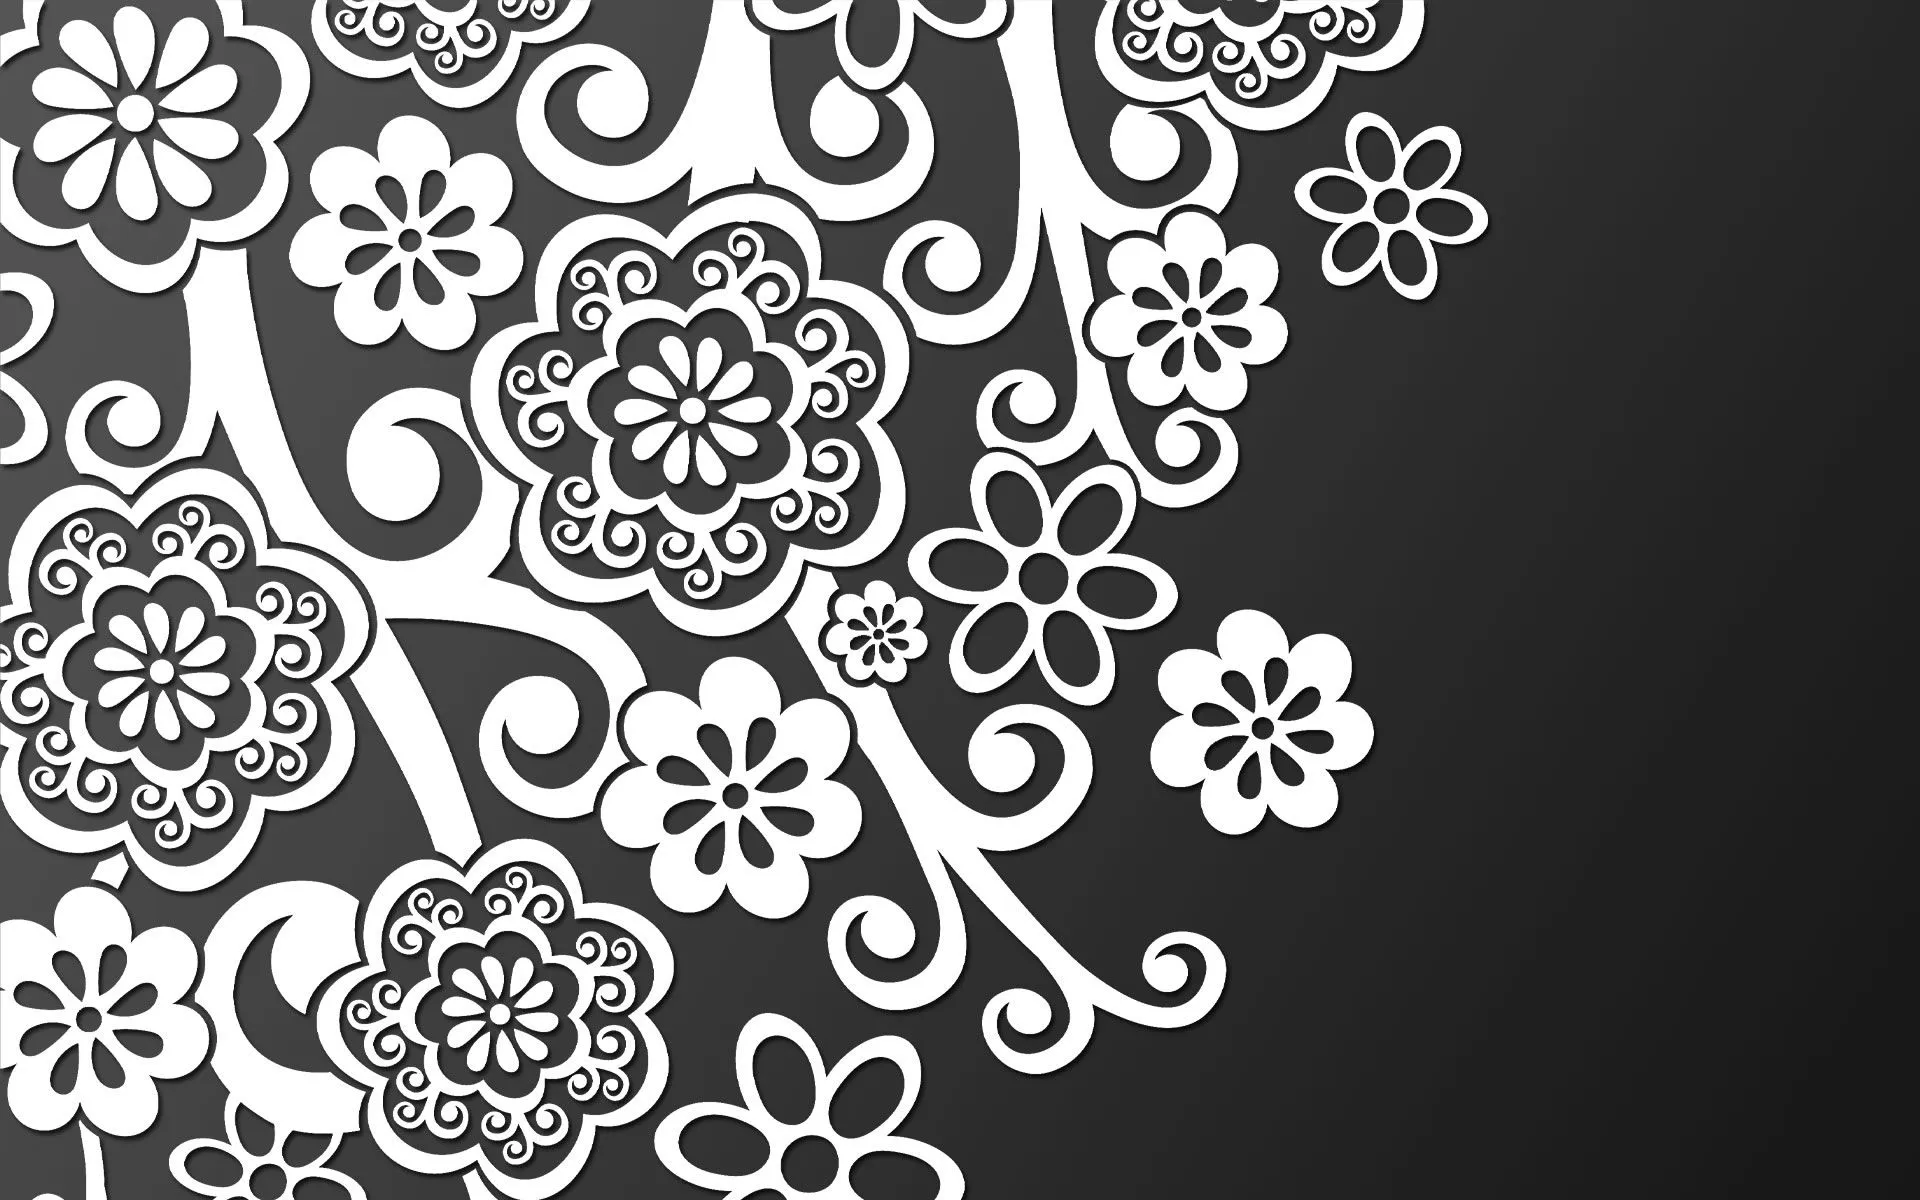 Abstracto Floral Blanco y Negro - Wallpapers